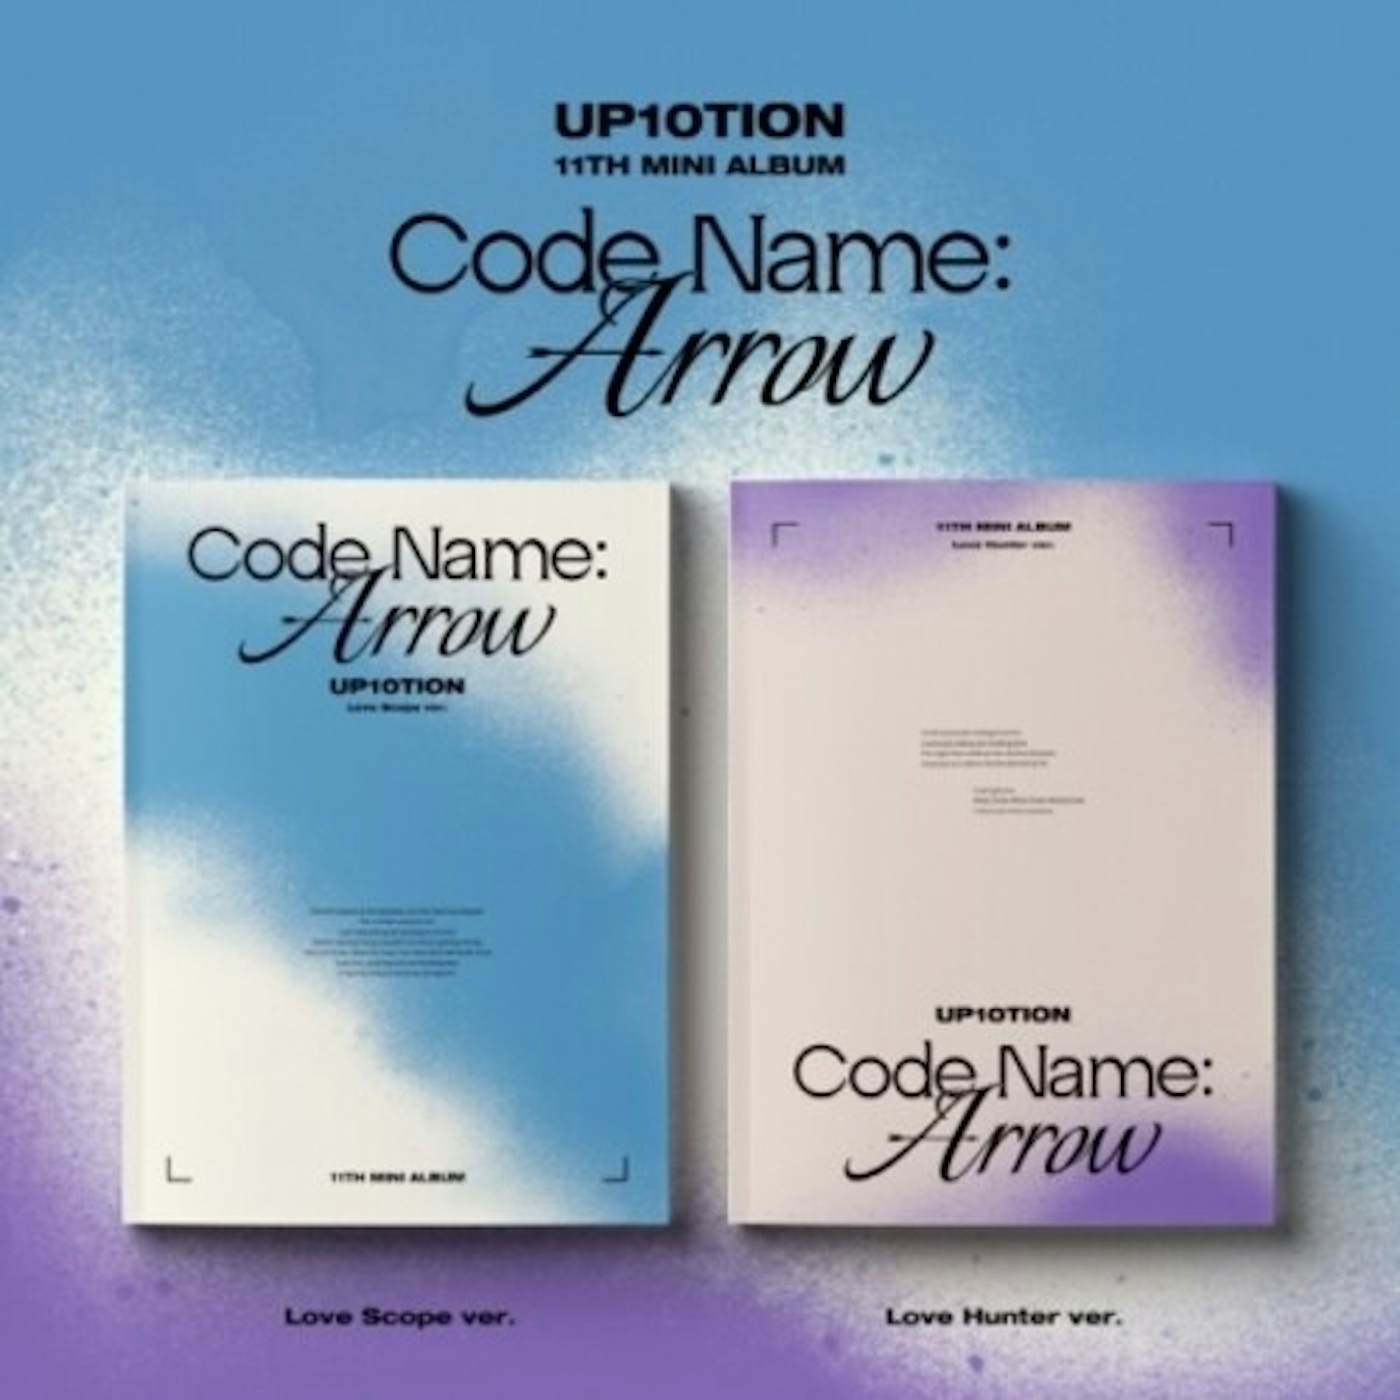 UP10TION CODE NAME: ARROW (RANDOM COVER) CD